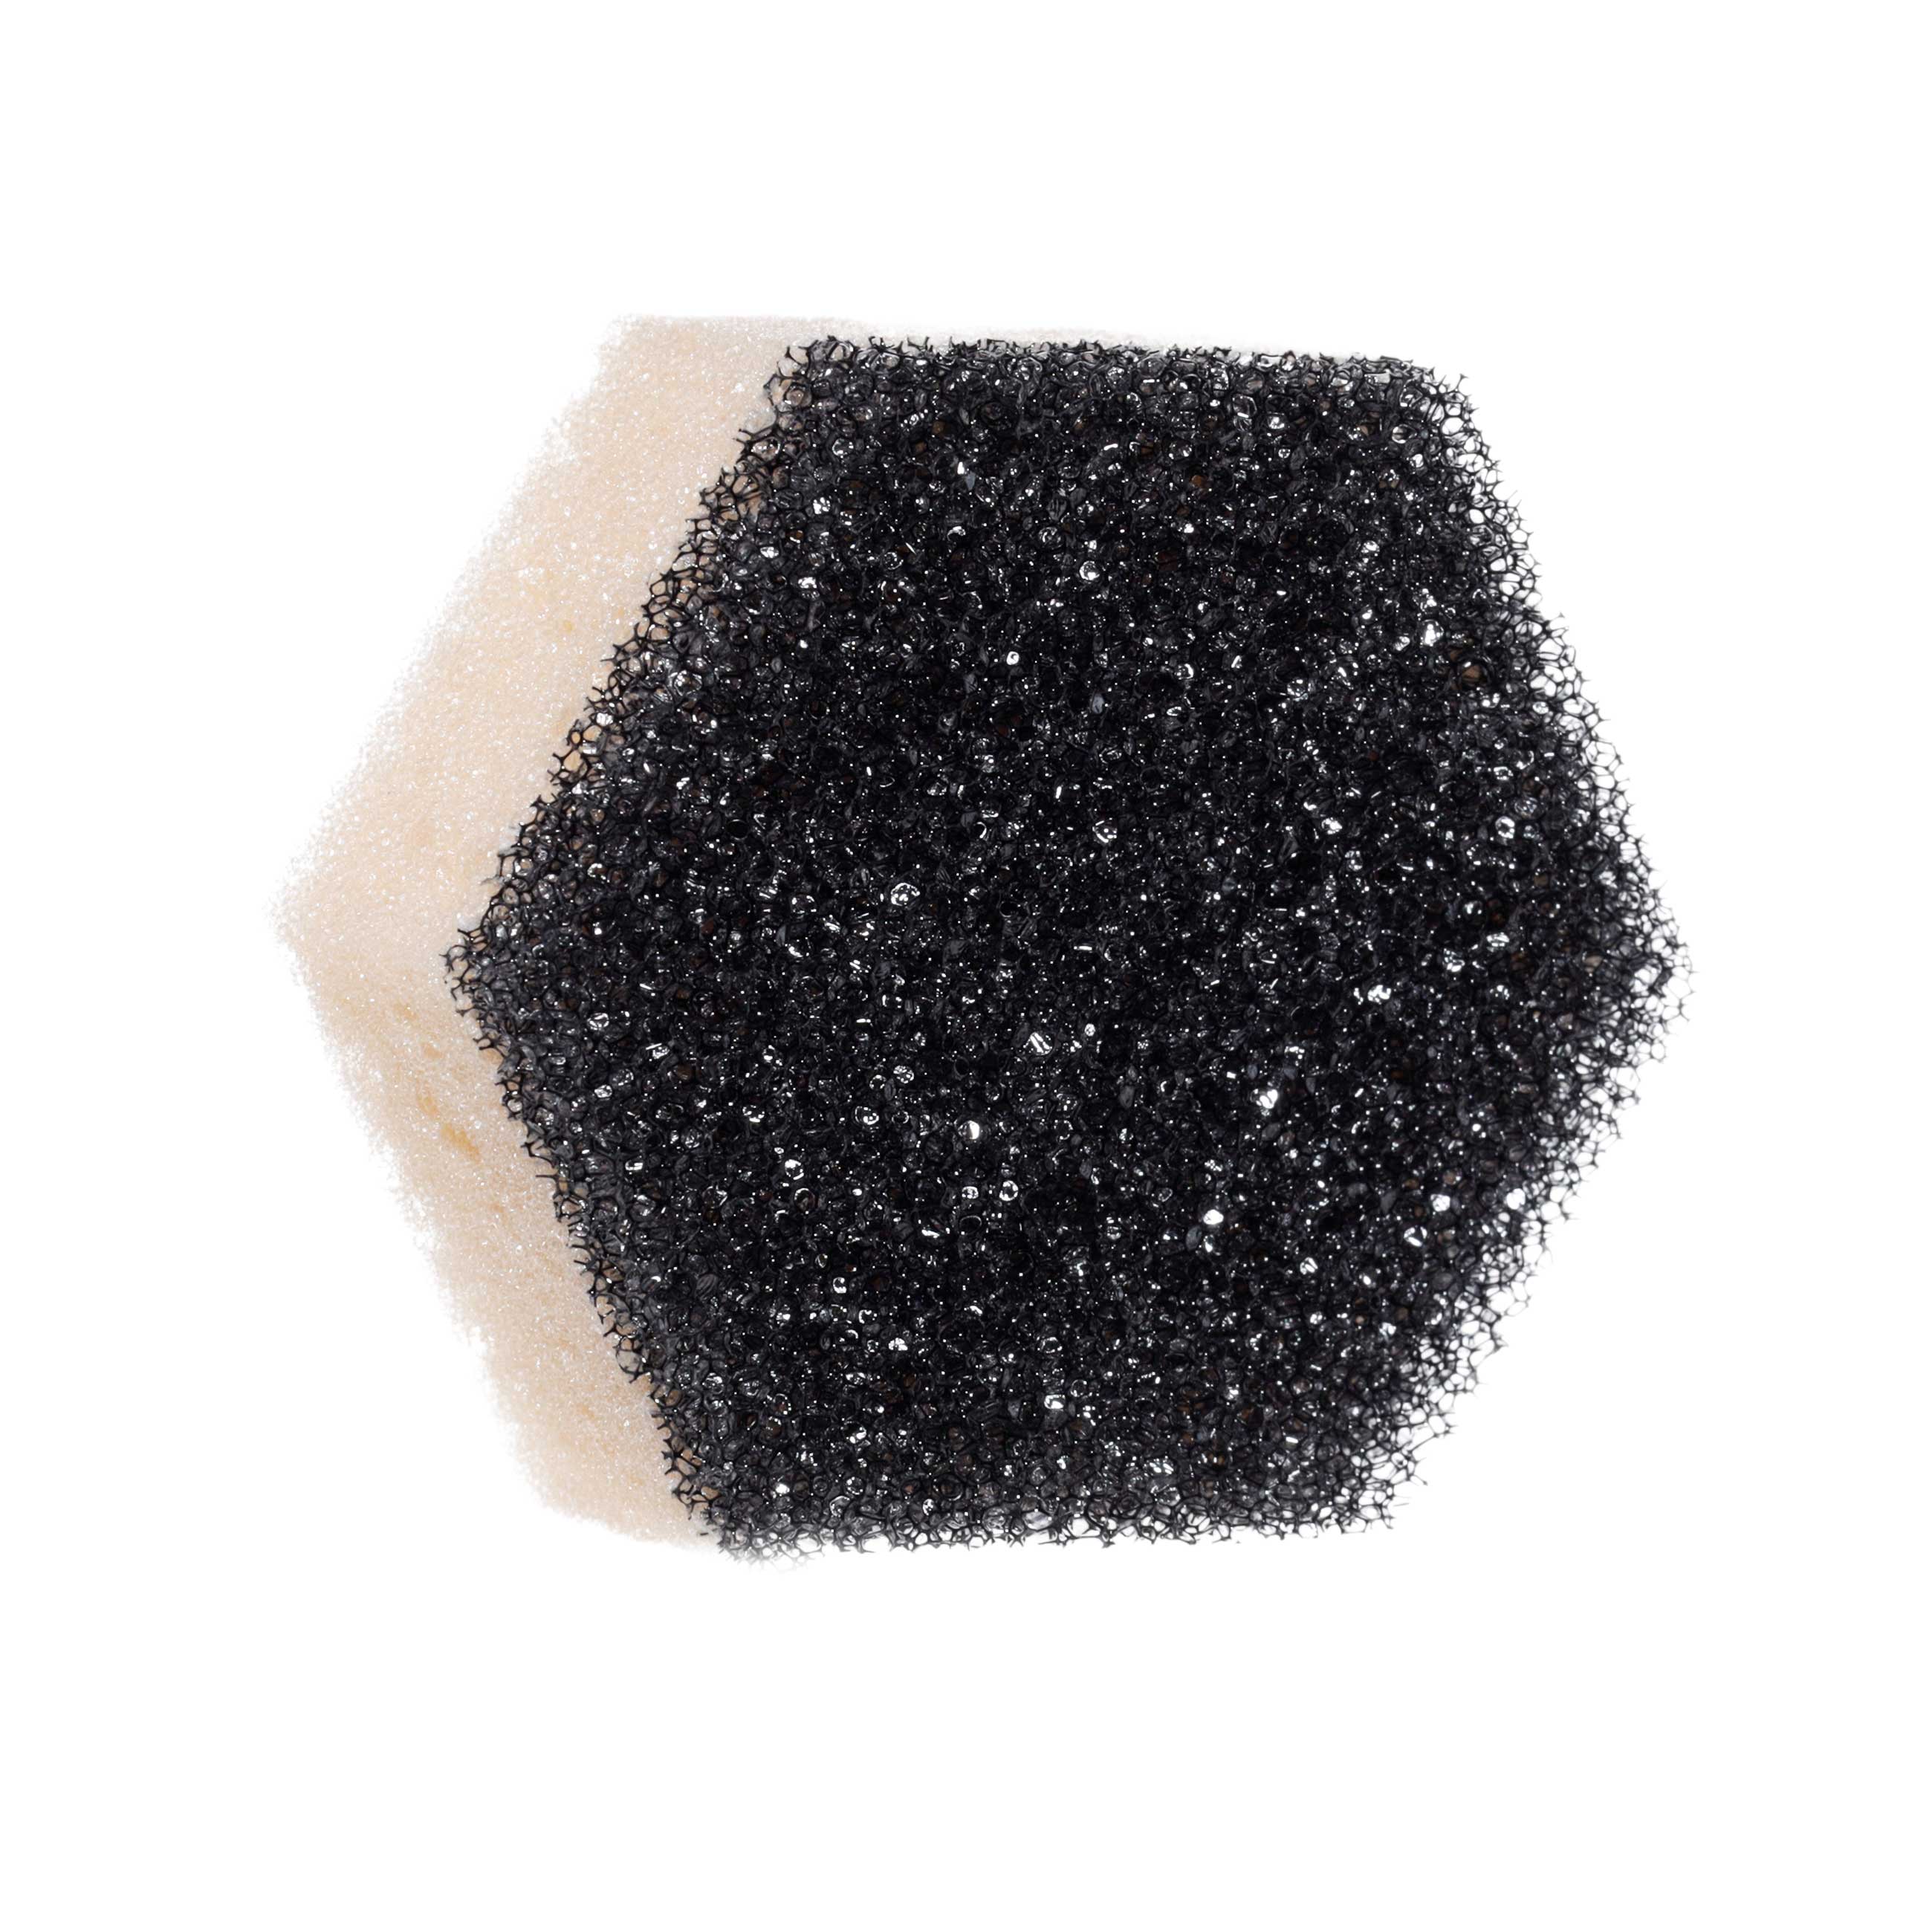 Губка для мытья посуды, 9х8 см, 3 шт, поролон/абразив, черно-бежевая, Black clean изображение № 3